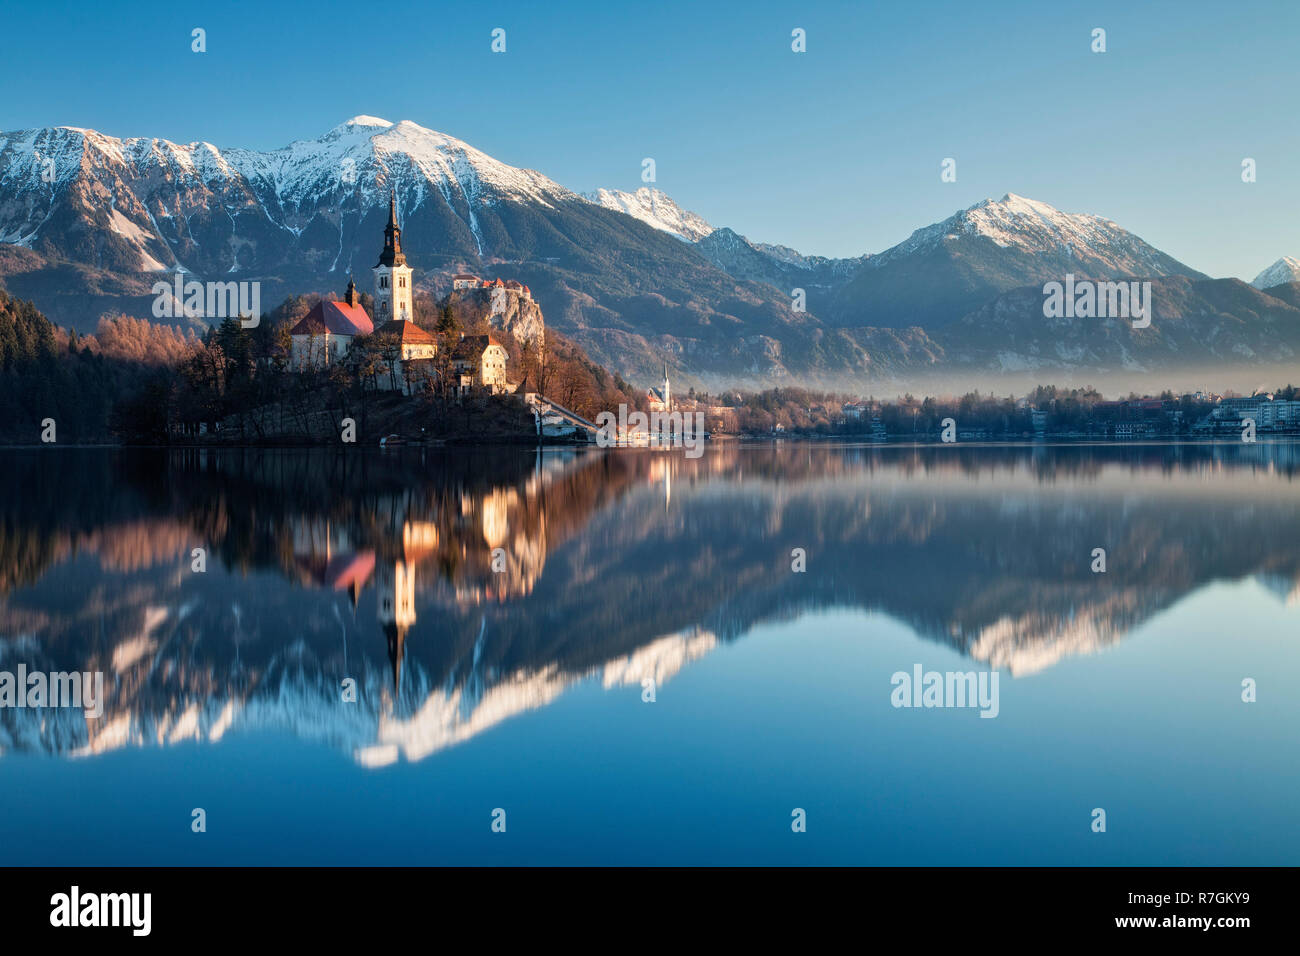 Le lac de Bled et l'île de Bled avec l'assomption de Marie à l'aube de l'église de pèlerinage, Bled, Alpes Juliennes, en Slovénie, Gorenjska Banque D'Images